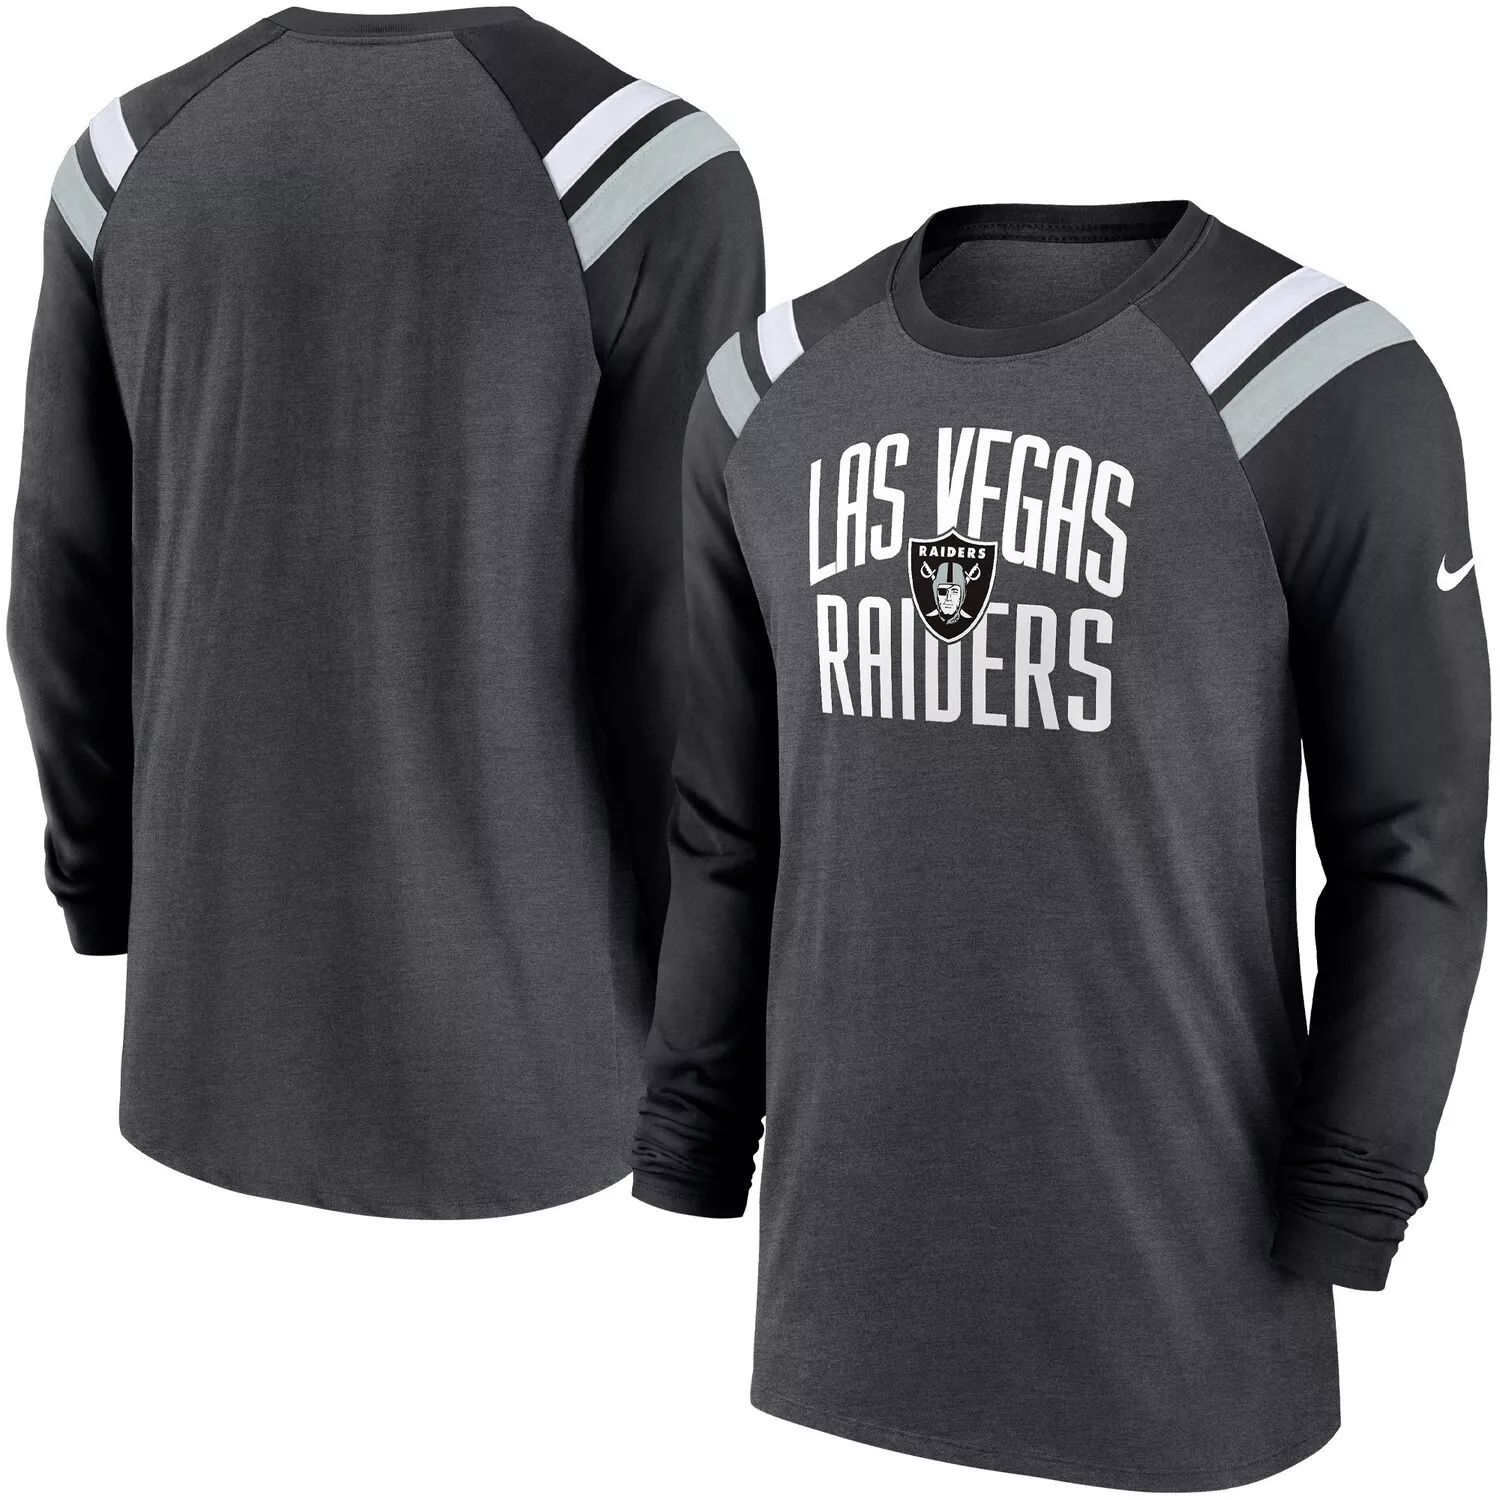 мужская серебристо черная футболка las vegas raiders throwback league с длинными рукавами и регланами tri blend starter мульти Мужская темно-серая/черная модная спортивная футболка Las Vegas Raiders Tri-Blend реглан с длинными рукавами Nike